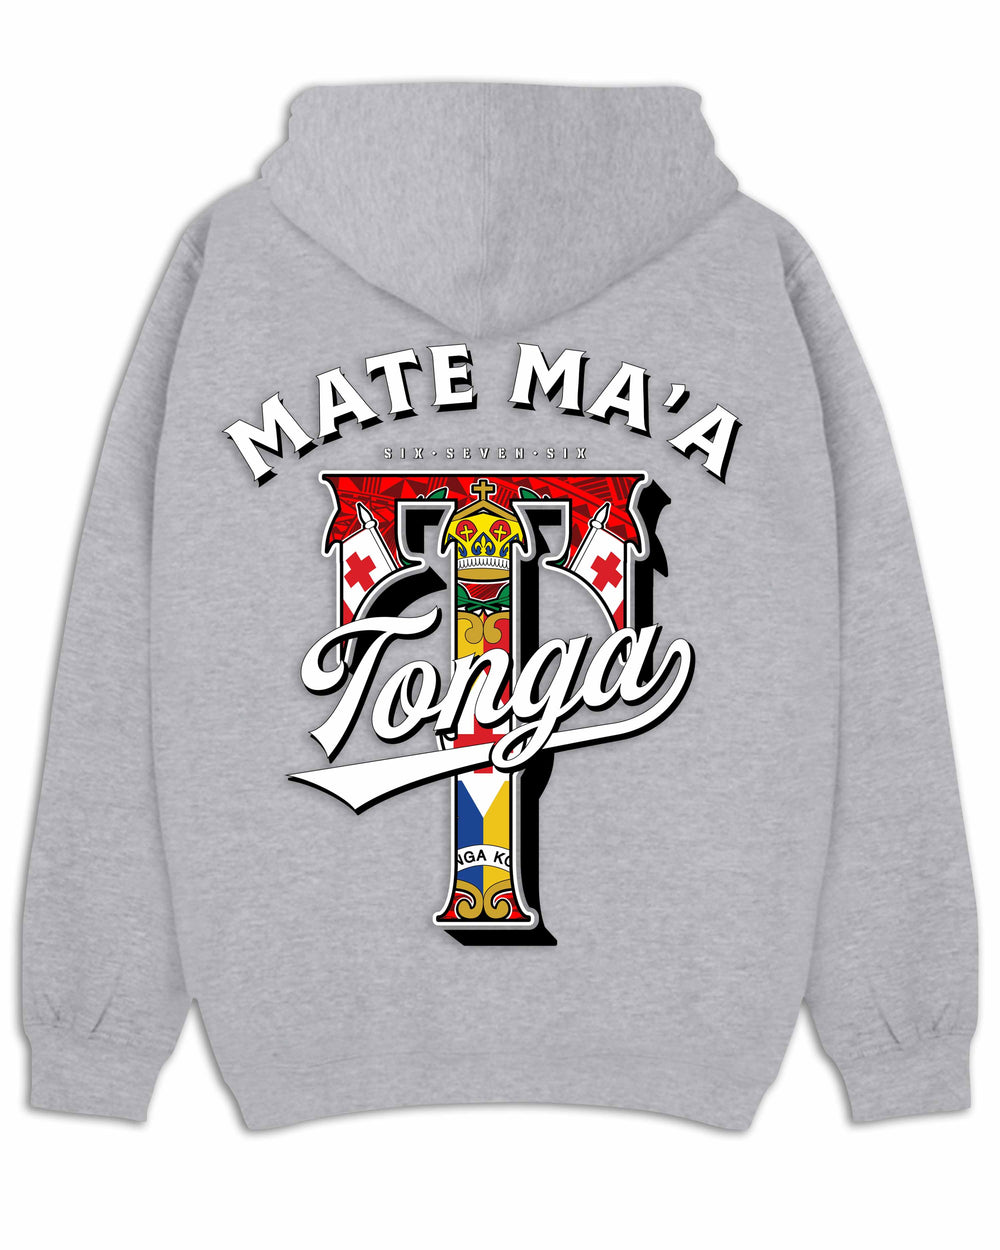 Red Mate Ma'a Tonga Grey Hood